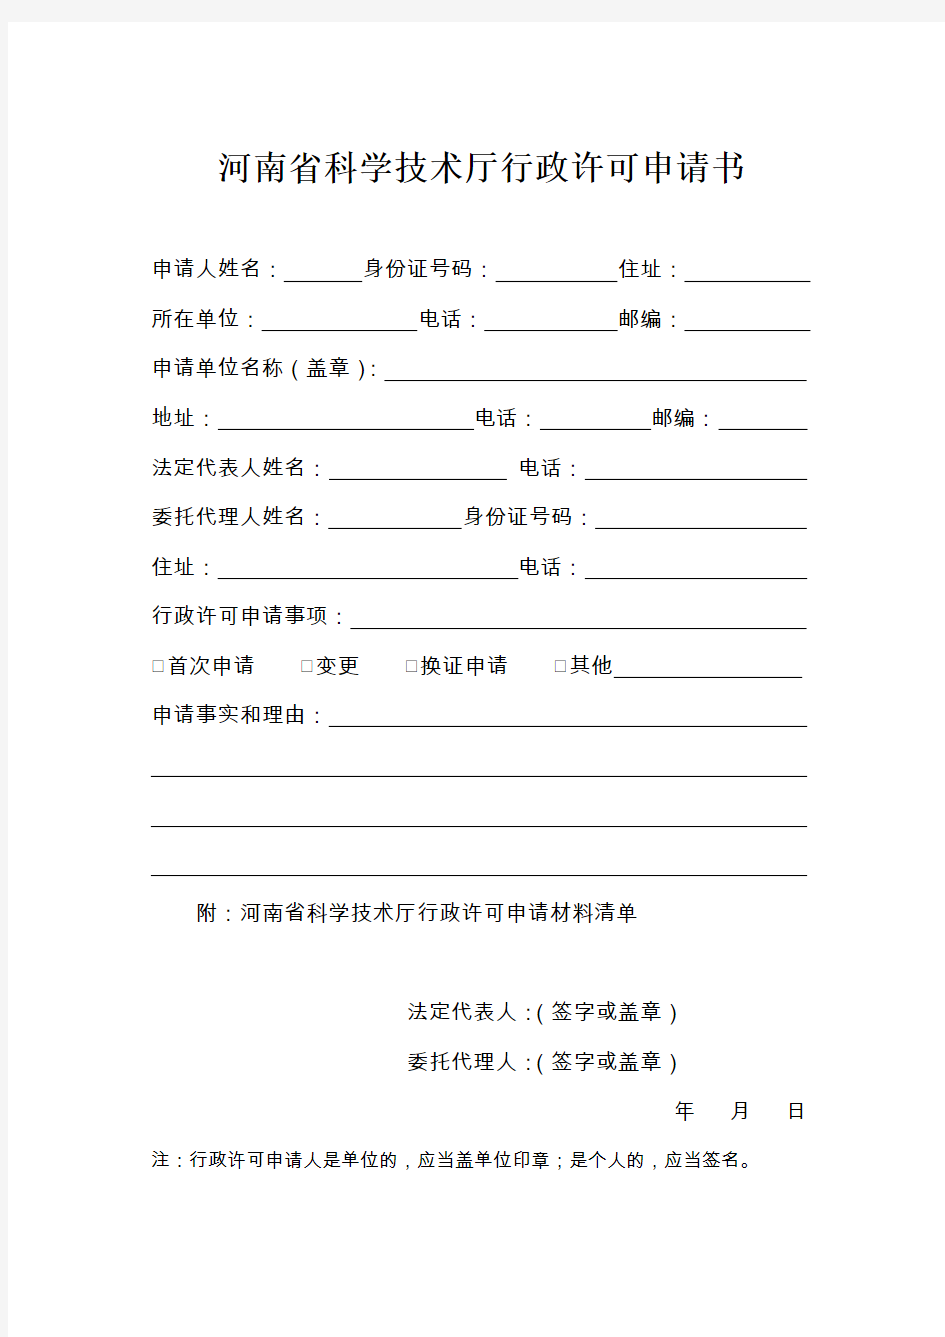 河南省科学技术厅行政许可申请书(附材料清单)